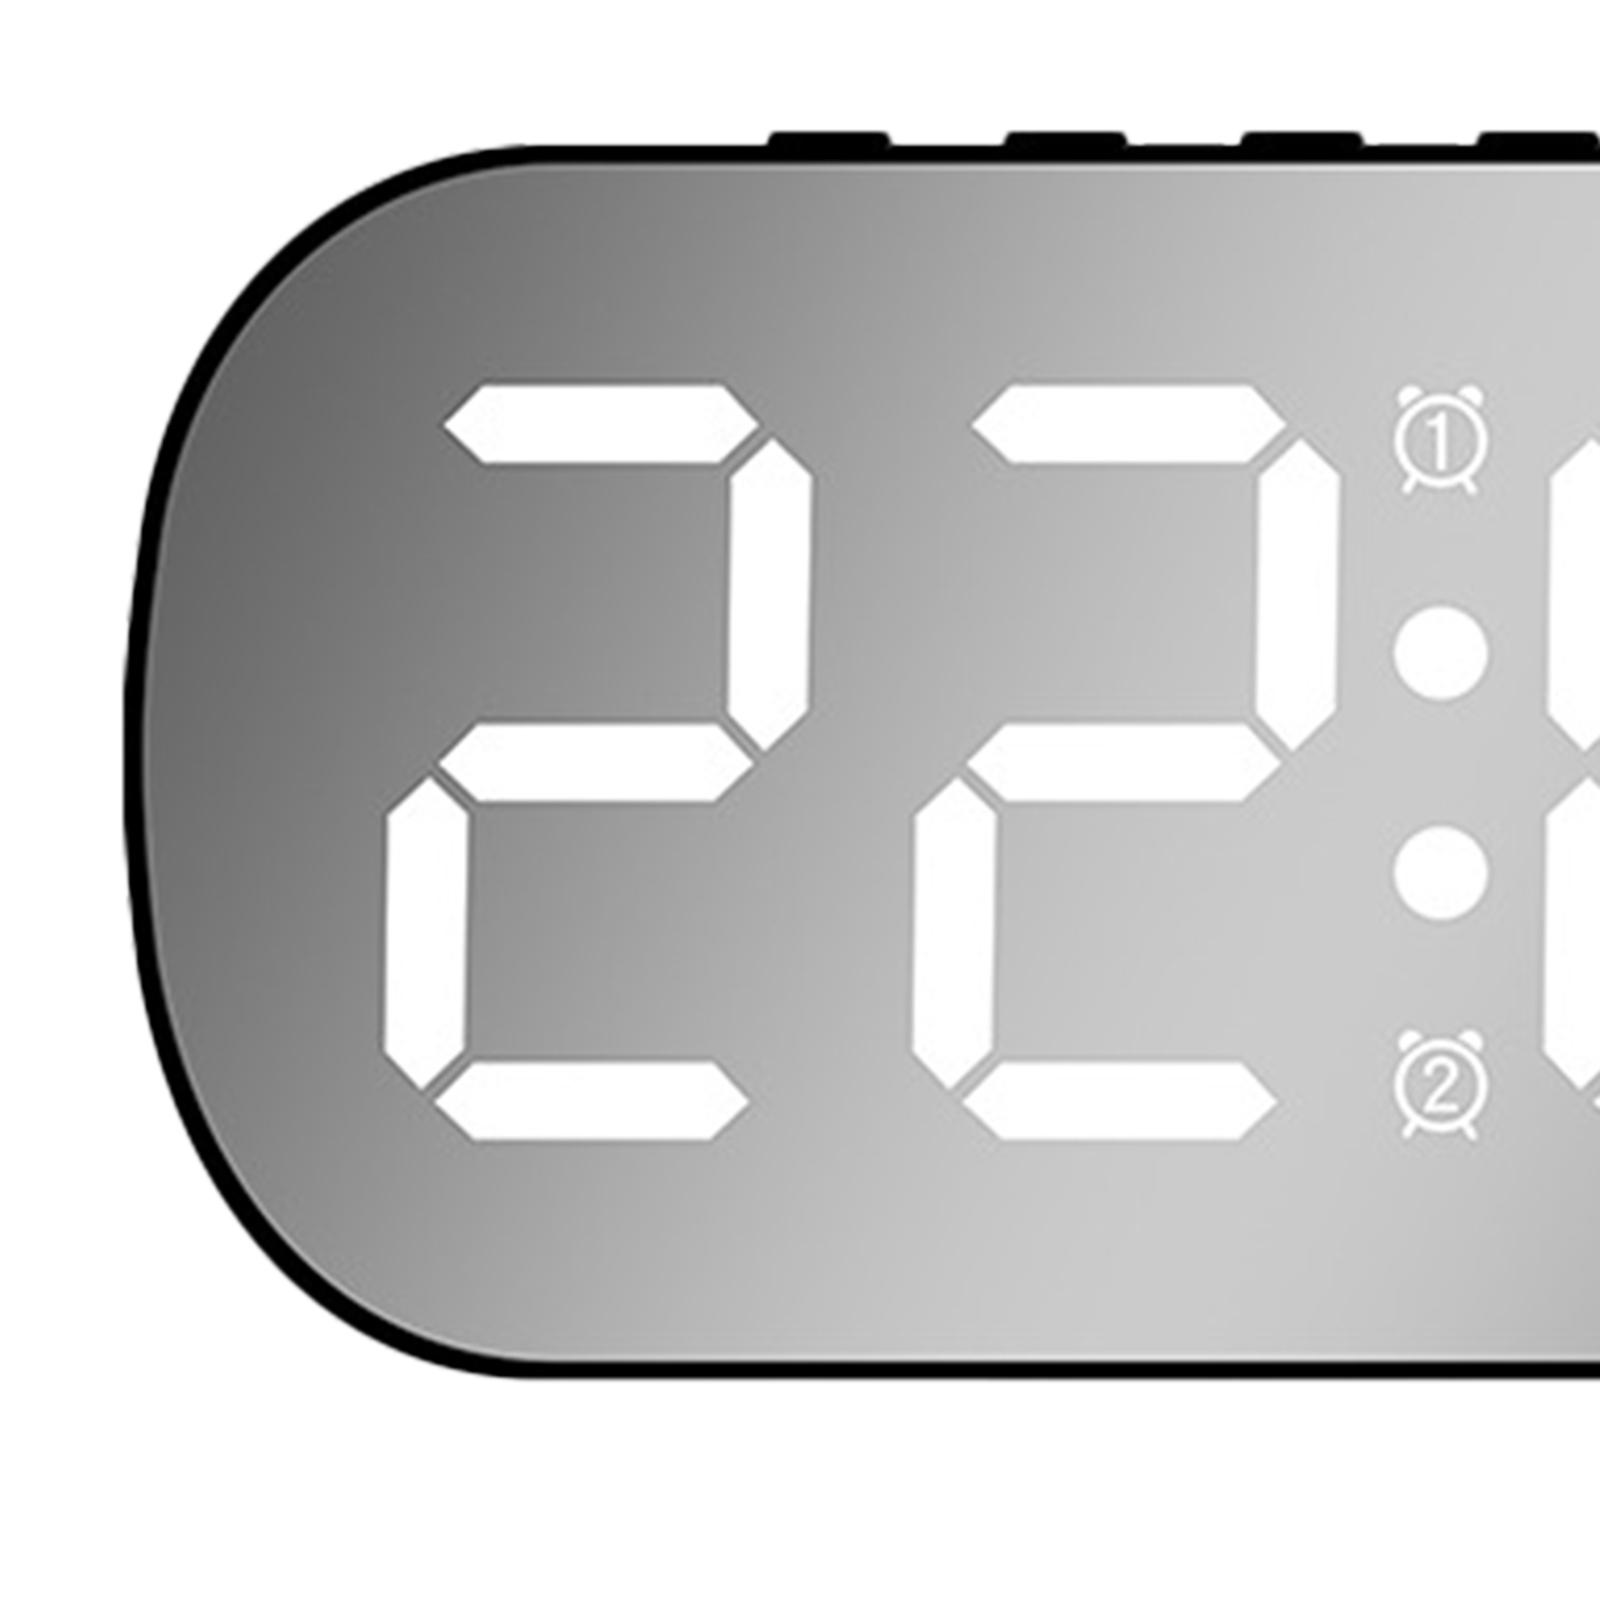 Digital Alarm Clock Mirrored Large Display 5 Adjustable Brightness LED Clock Black White LED